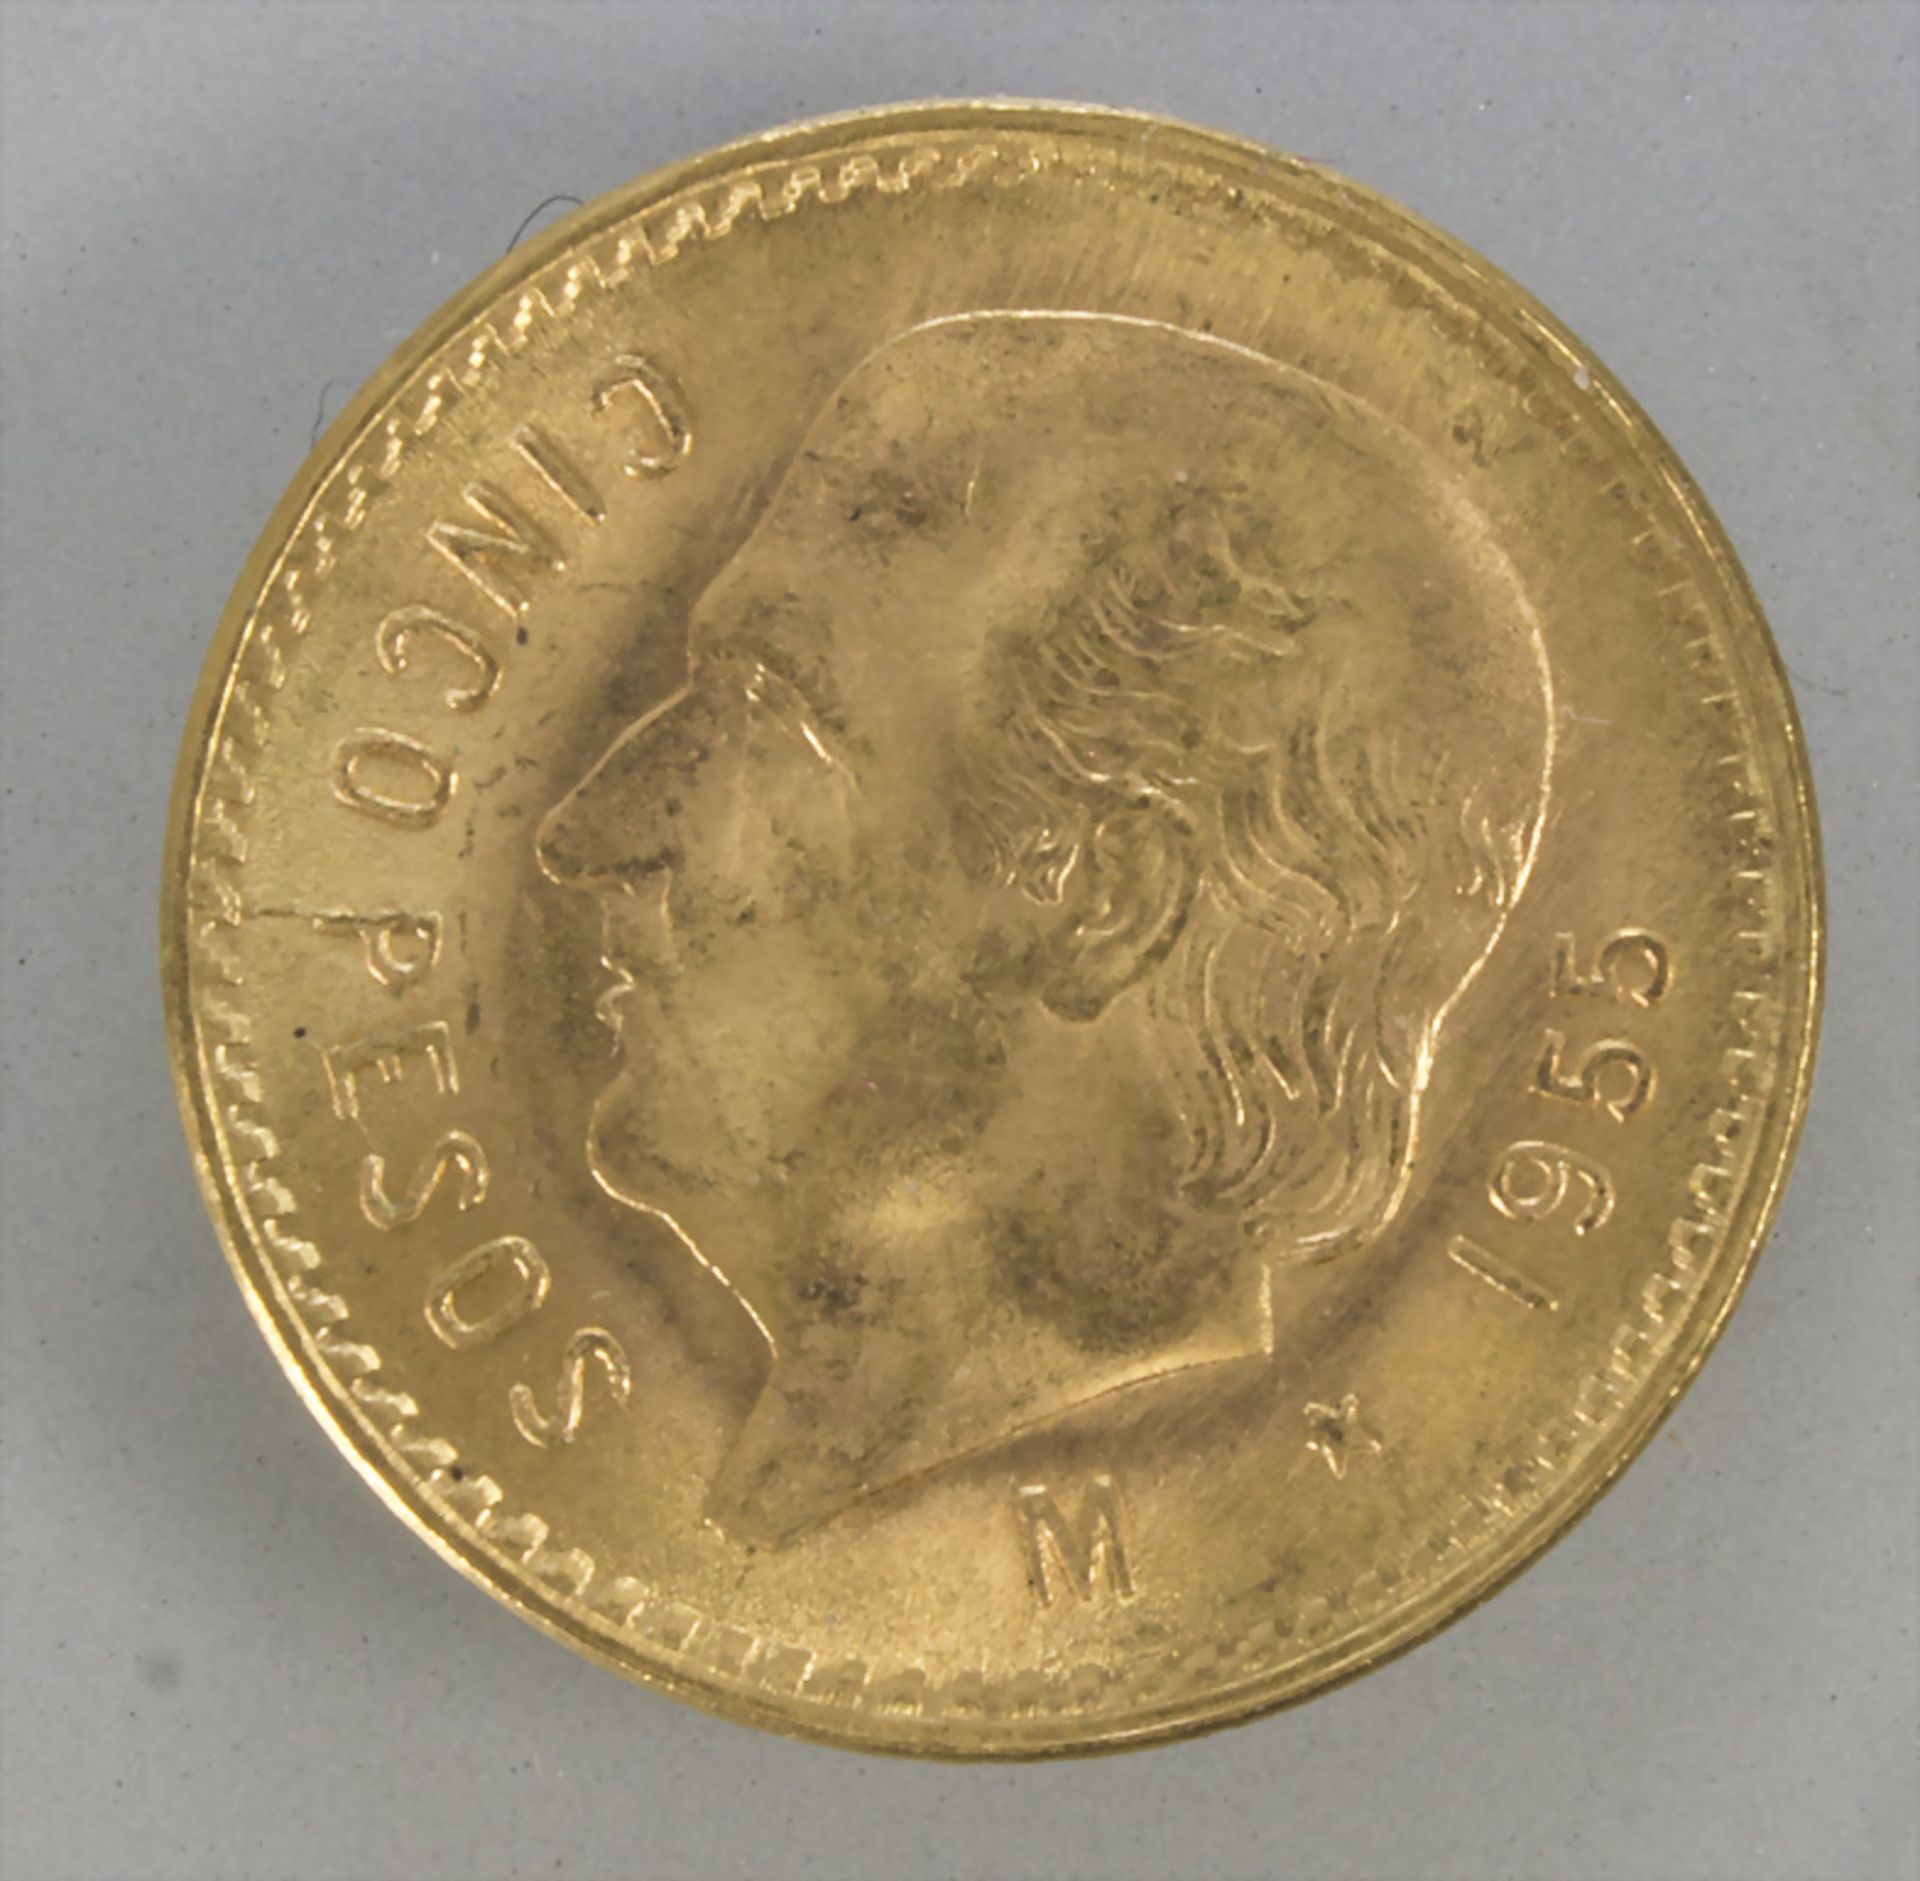 Goldmünze, Mexiko, 5 Pesos, 1955 / A gold coin, Mexico, 5 pesos, 1955